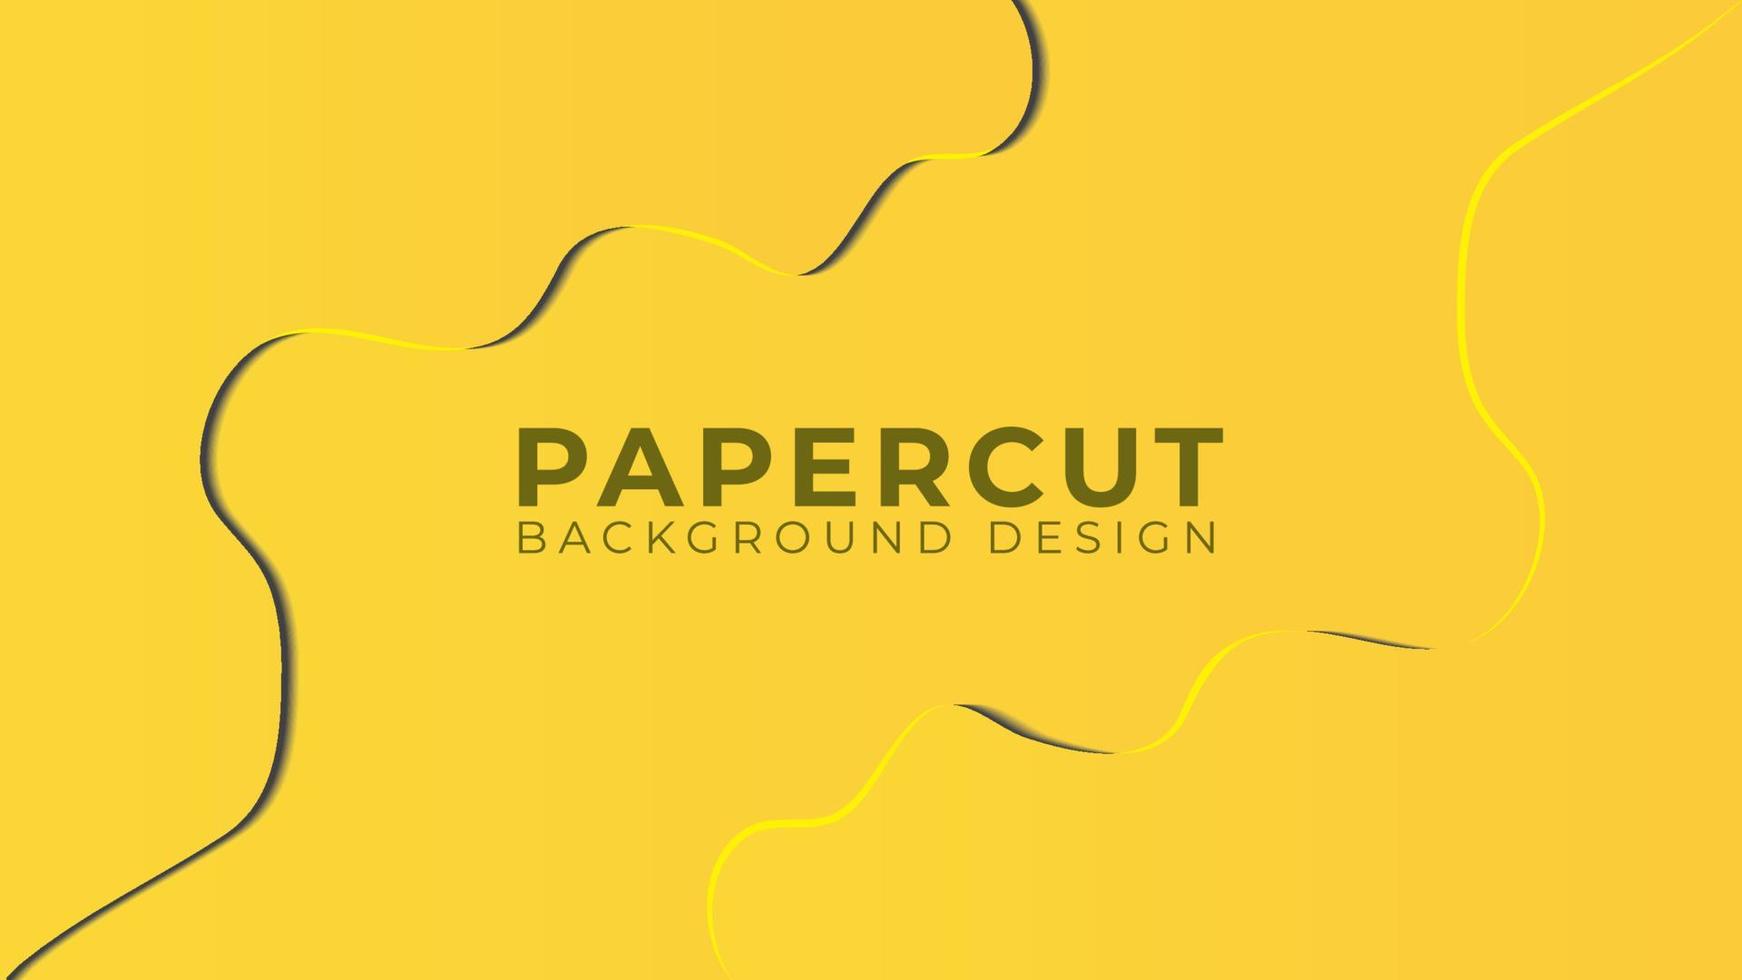 Ilustración de vector de capas de corte de papel 3d colorido. plantilla de diseño de fondo abstracto brillante. tema de color naranja amarillo. estilo de diseño limpio y simple